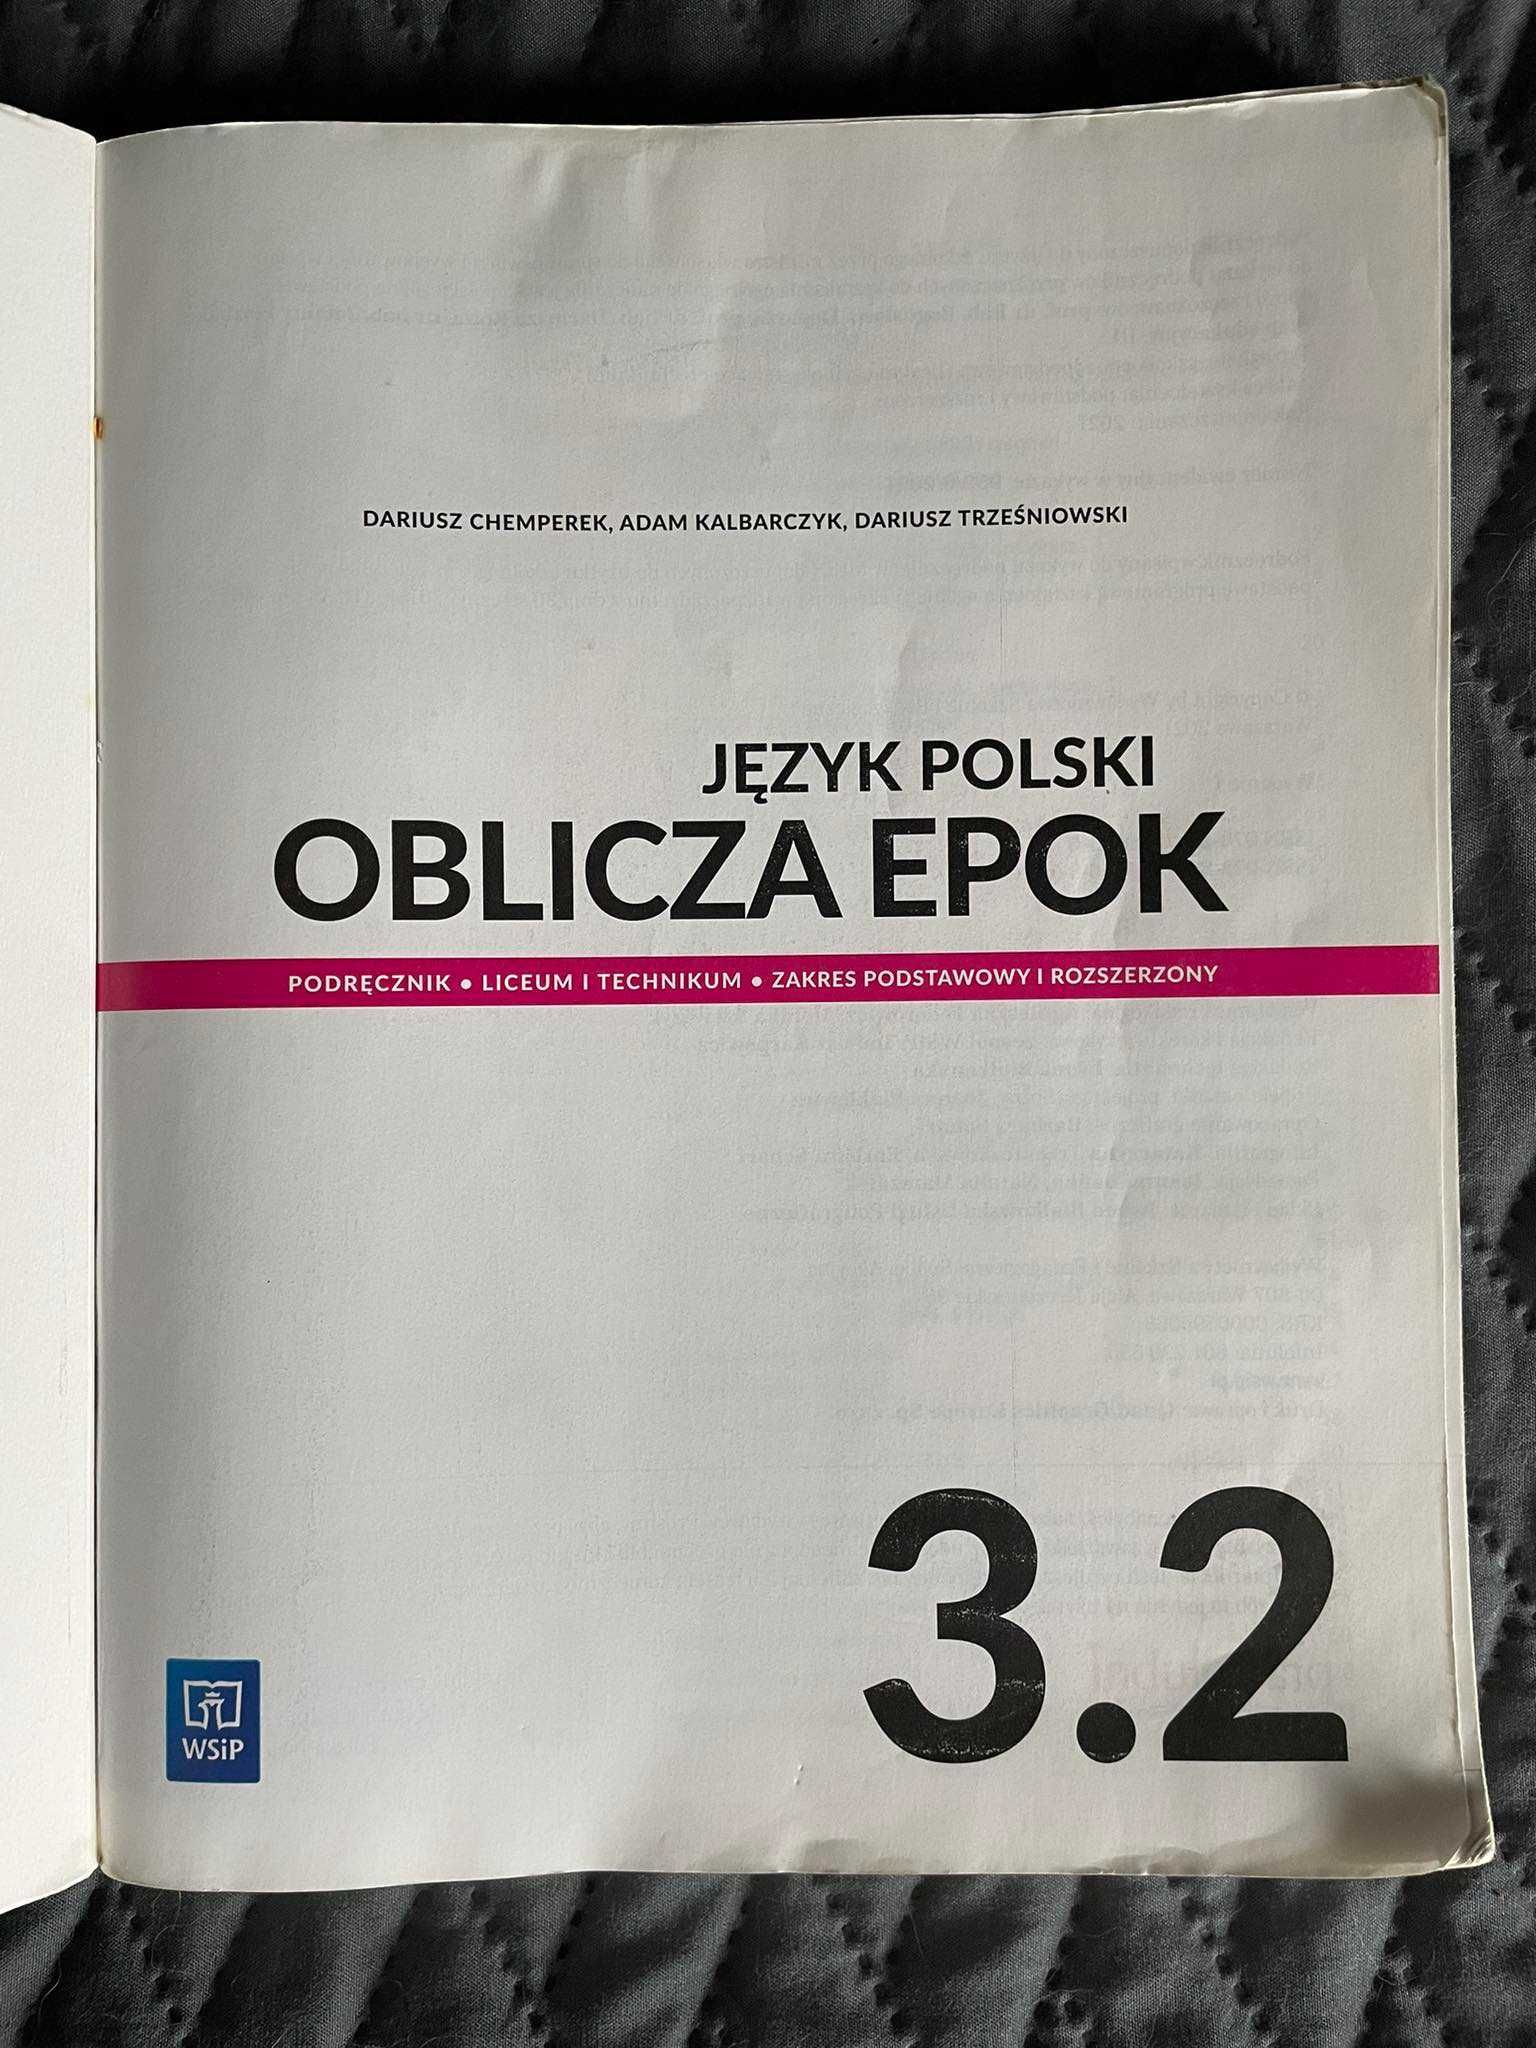 Język polski 3.2 Oblicza epok zakres podstawowy i rozszerzony